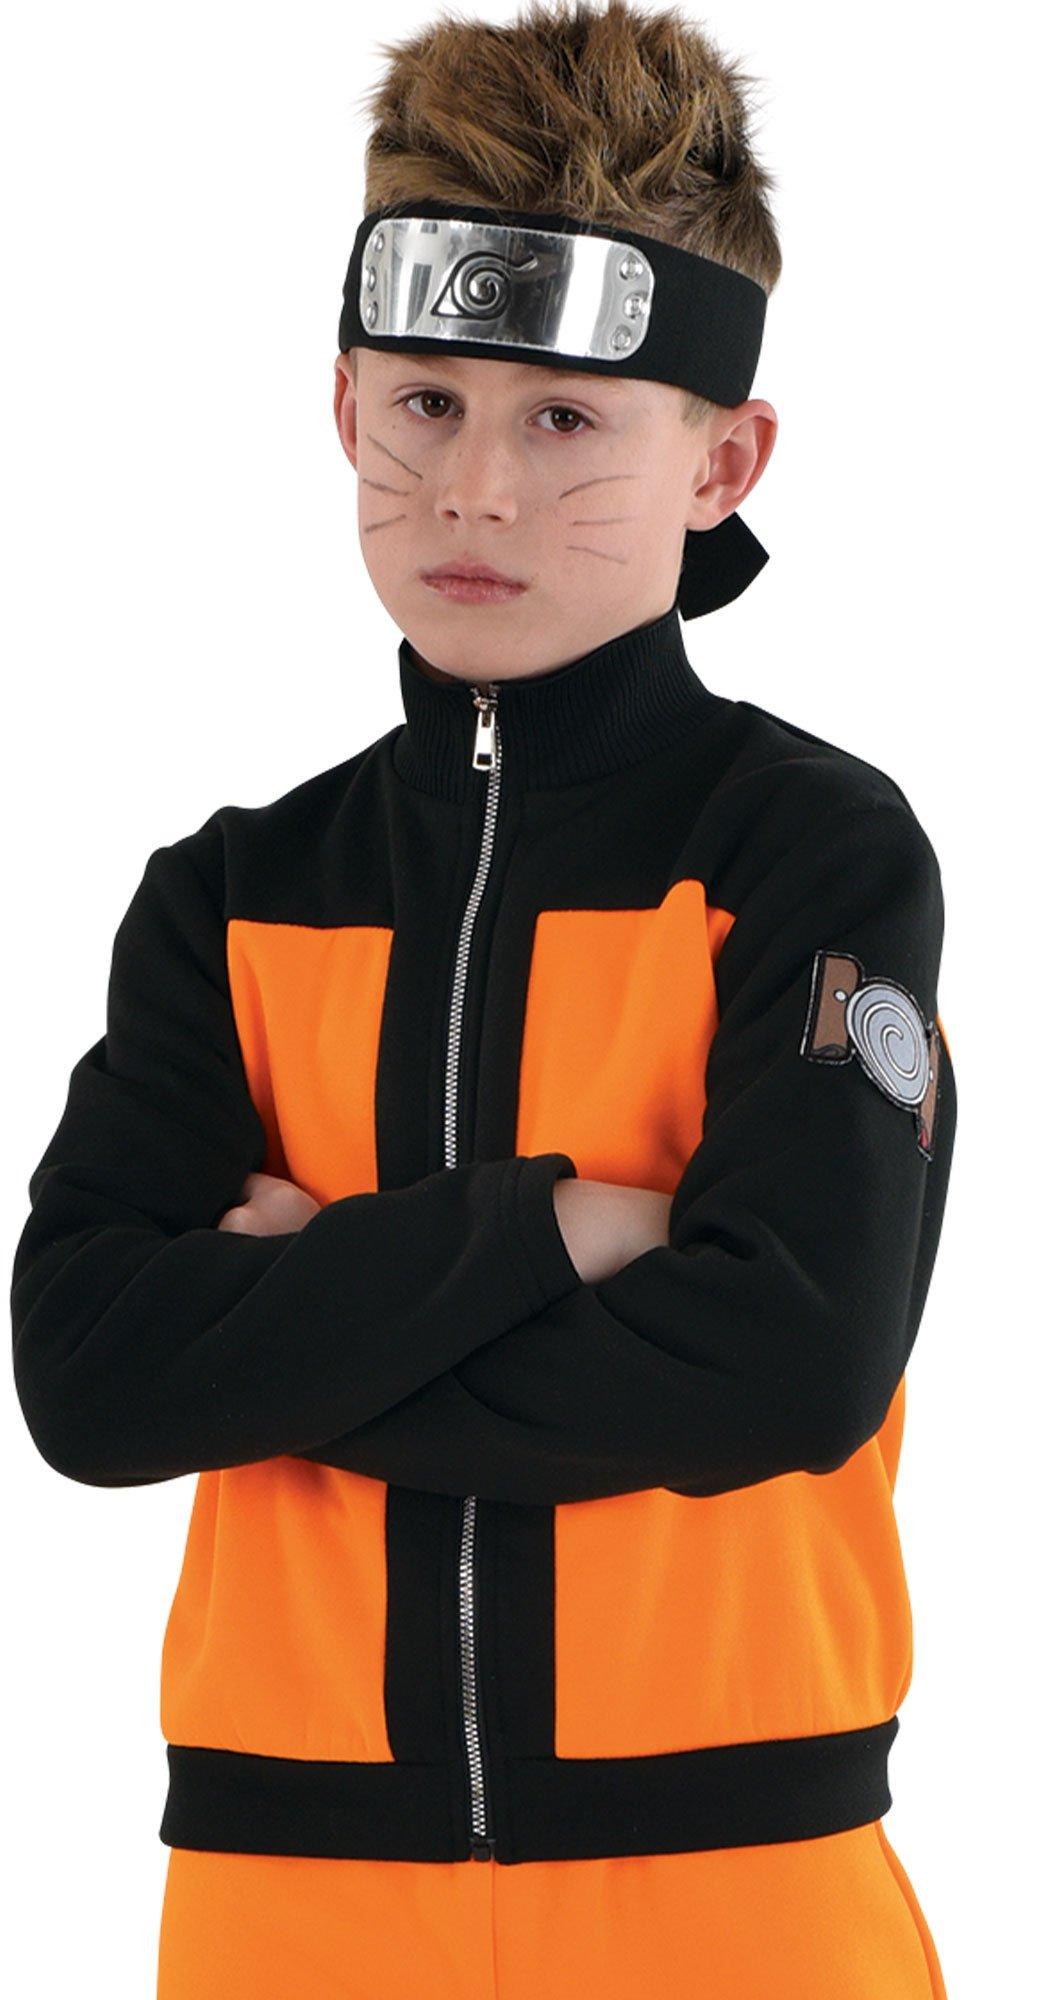 Kid's Naruto Shippuden Naruto Costume